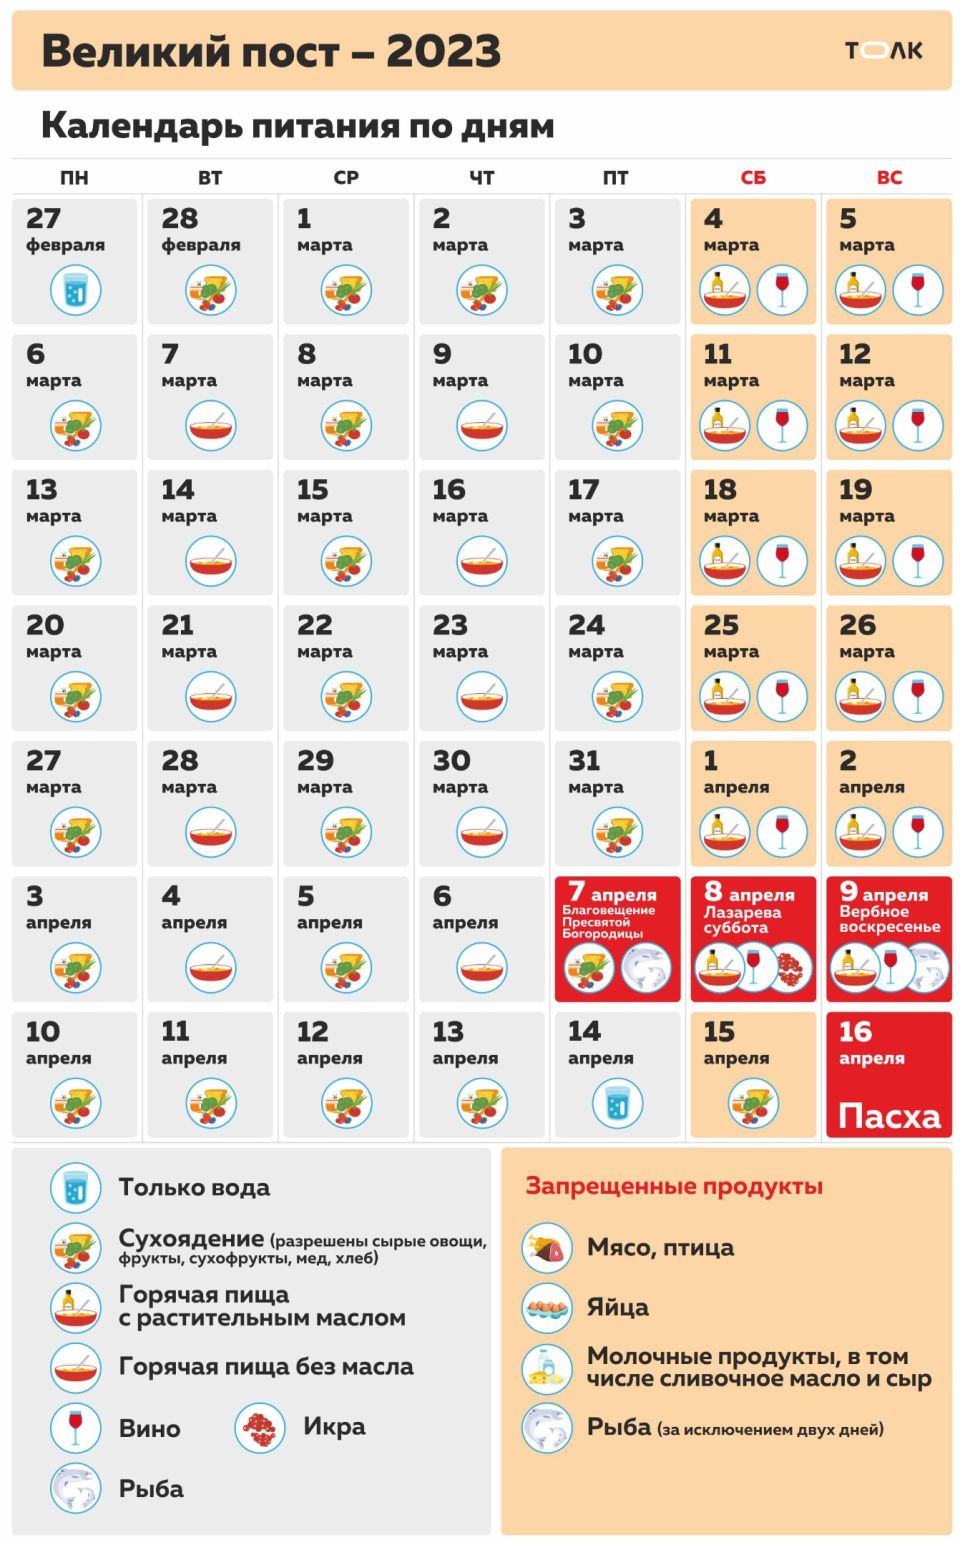 Как правильно питаться в Великий пост в 2023 году. Календарь-инфографика |  27.02.2023 | Барнаул - БезФормата